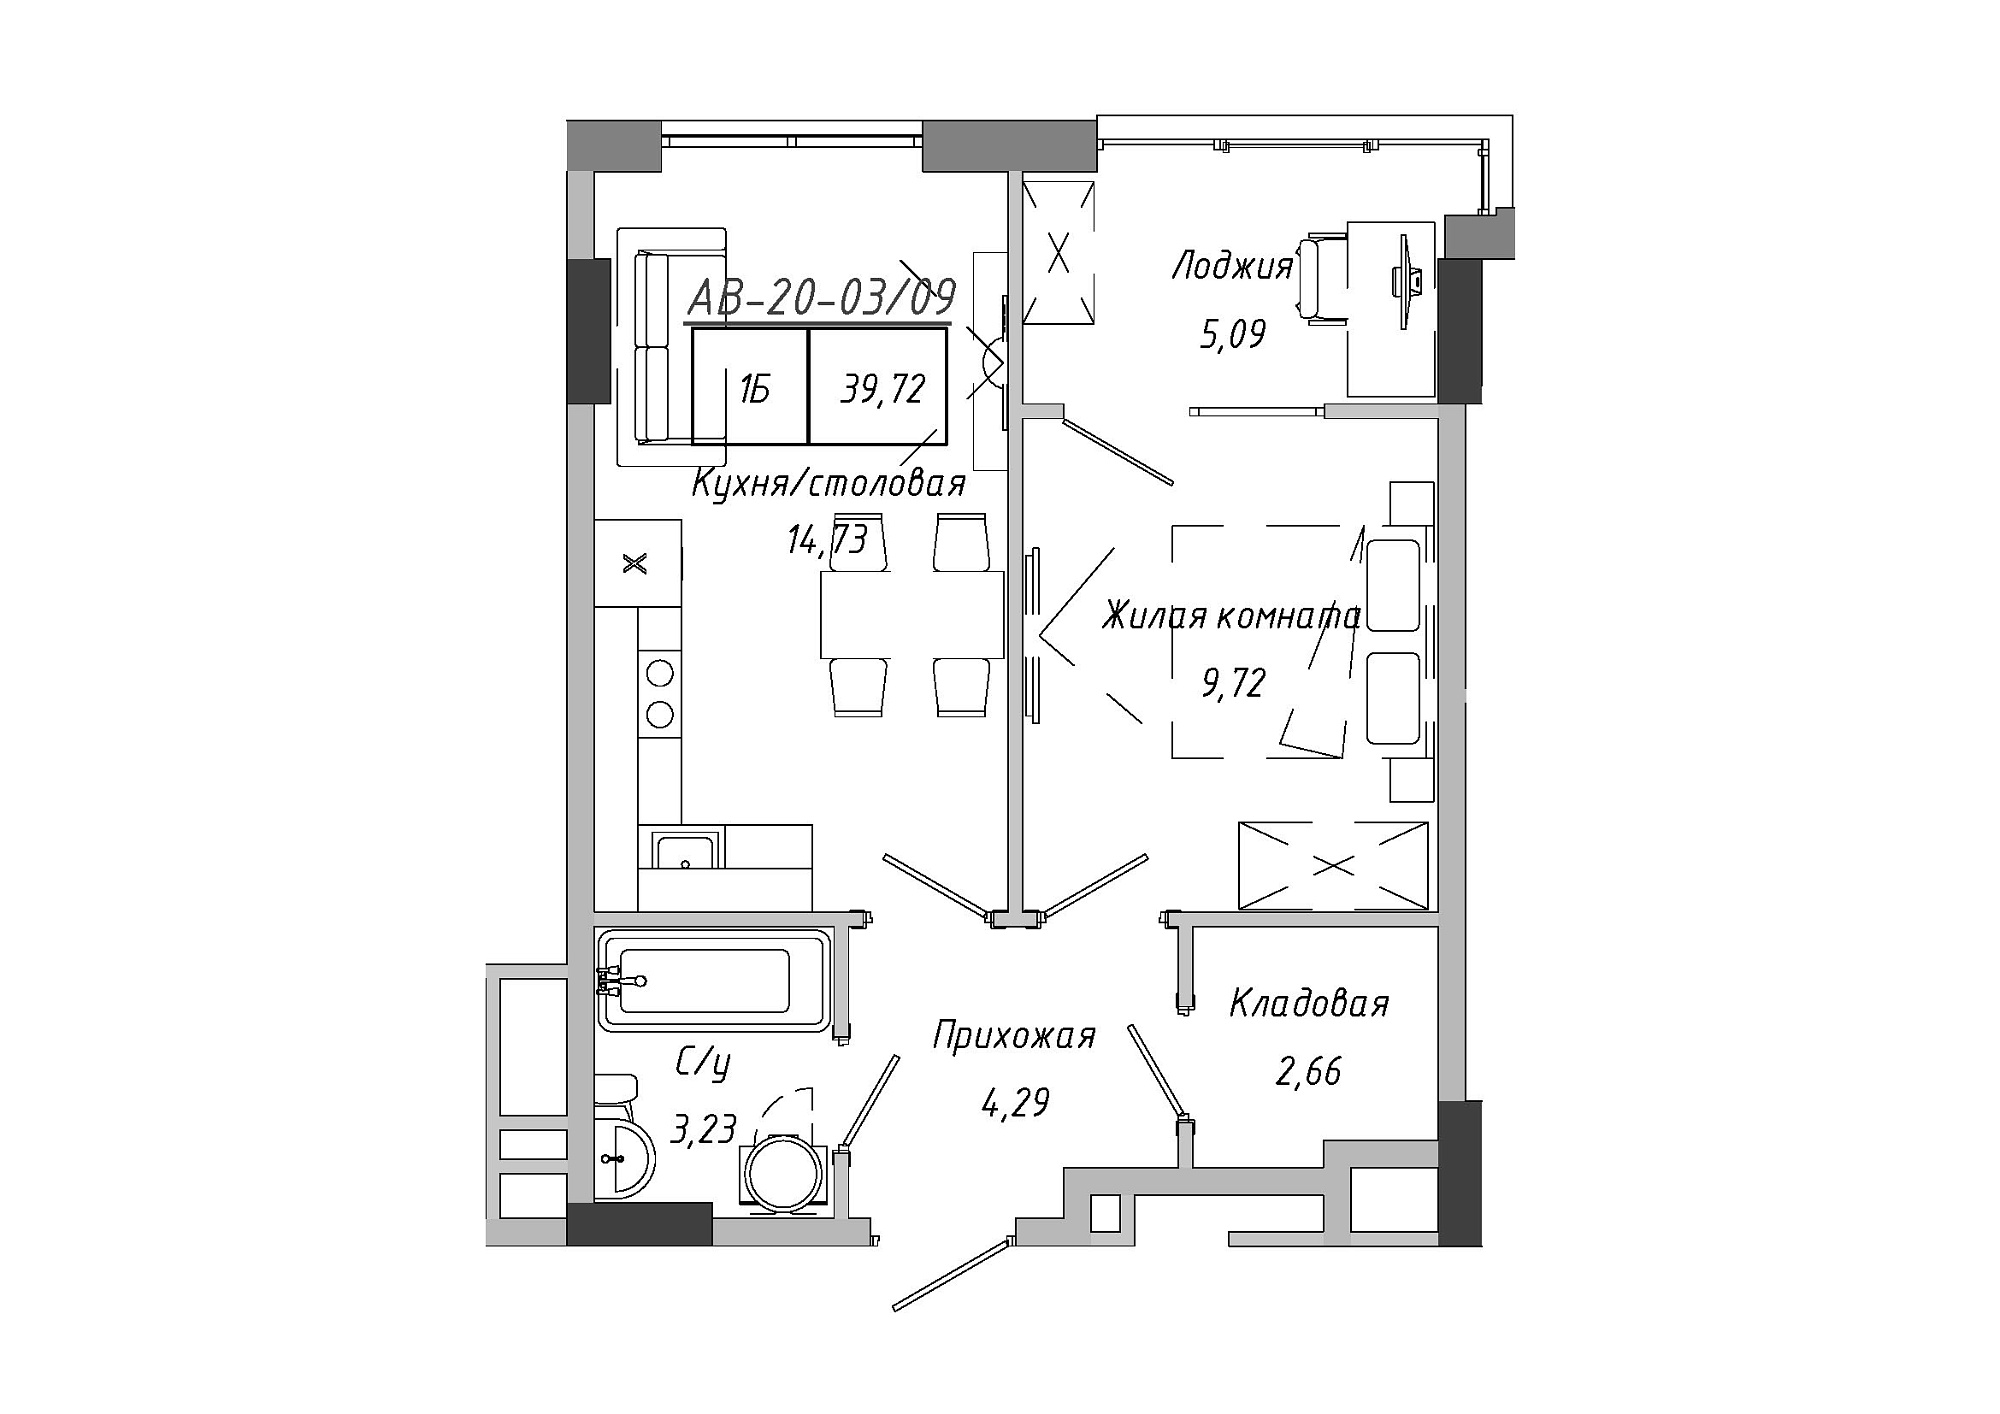 Планування 1-к квартира площею 39.72м2, AB-20-03/00009.